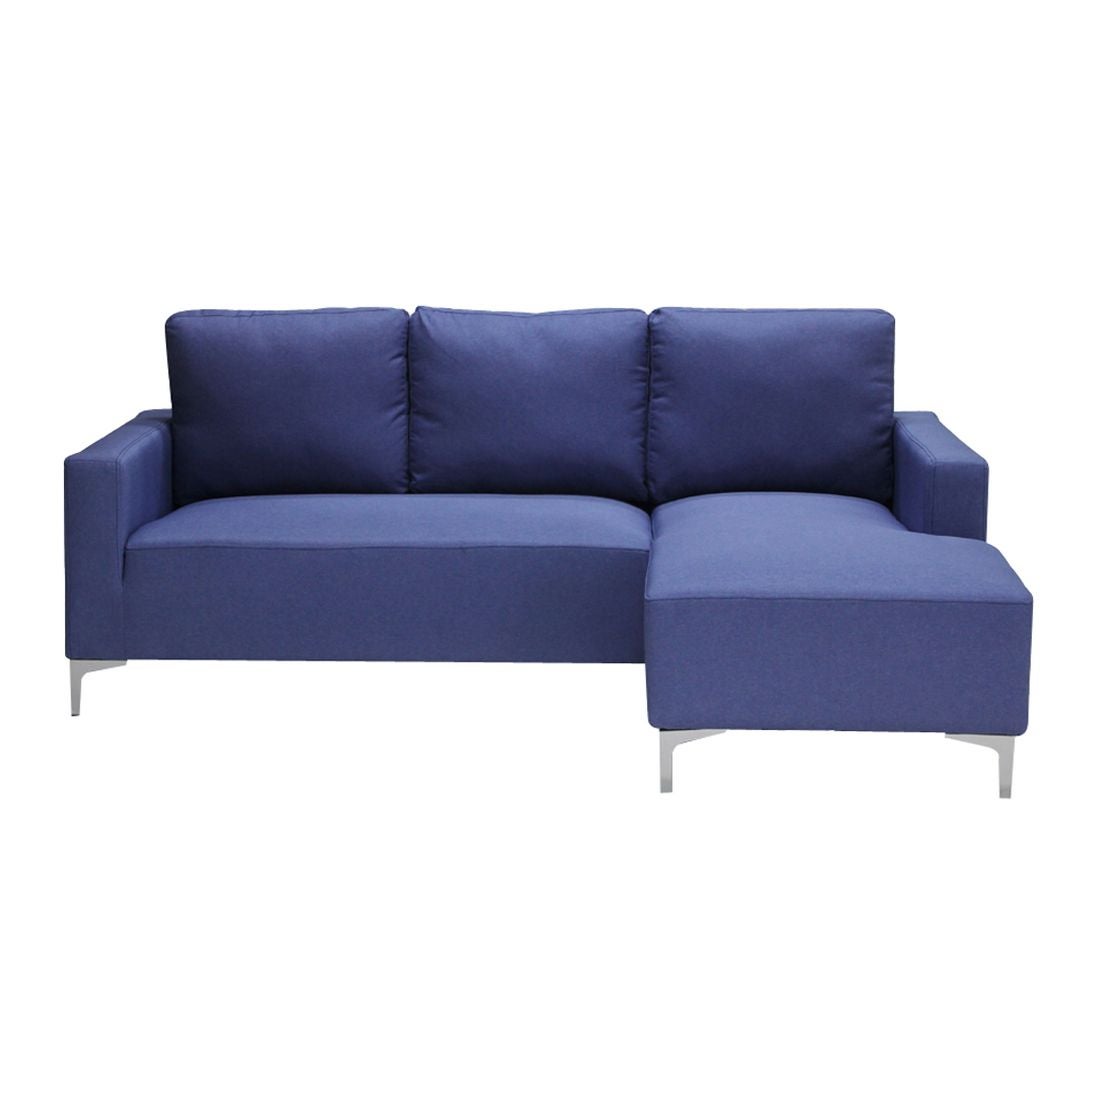 โซฟาผ้า โซฟาเข้ามุมขวา รุ่น Utip สีสีฟ้า-SB Design Square